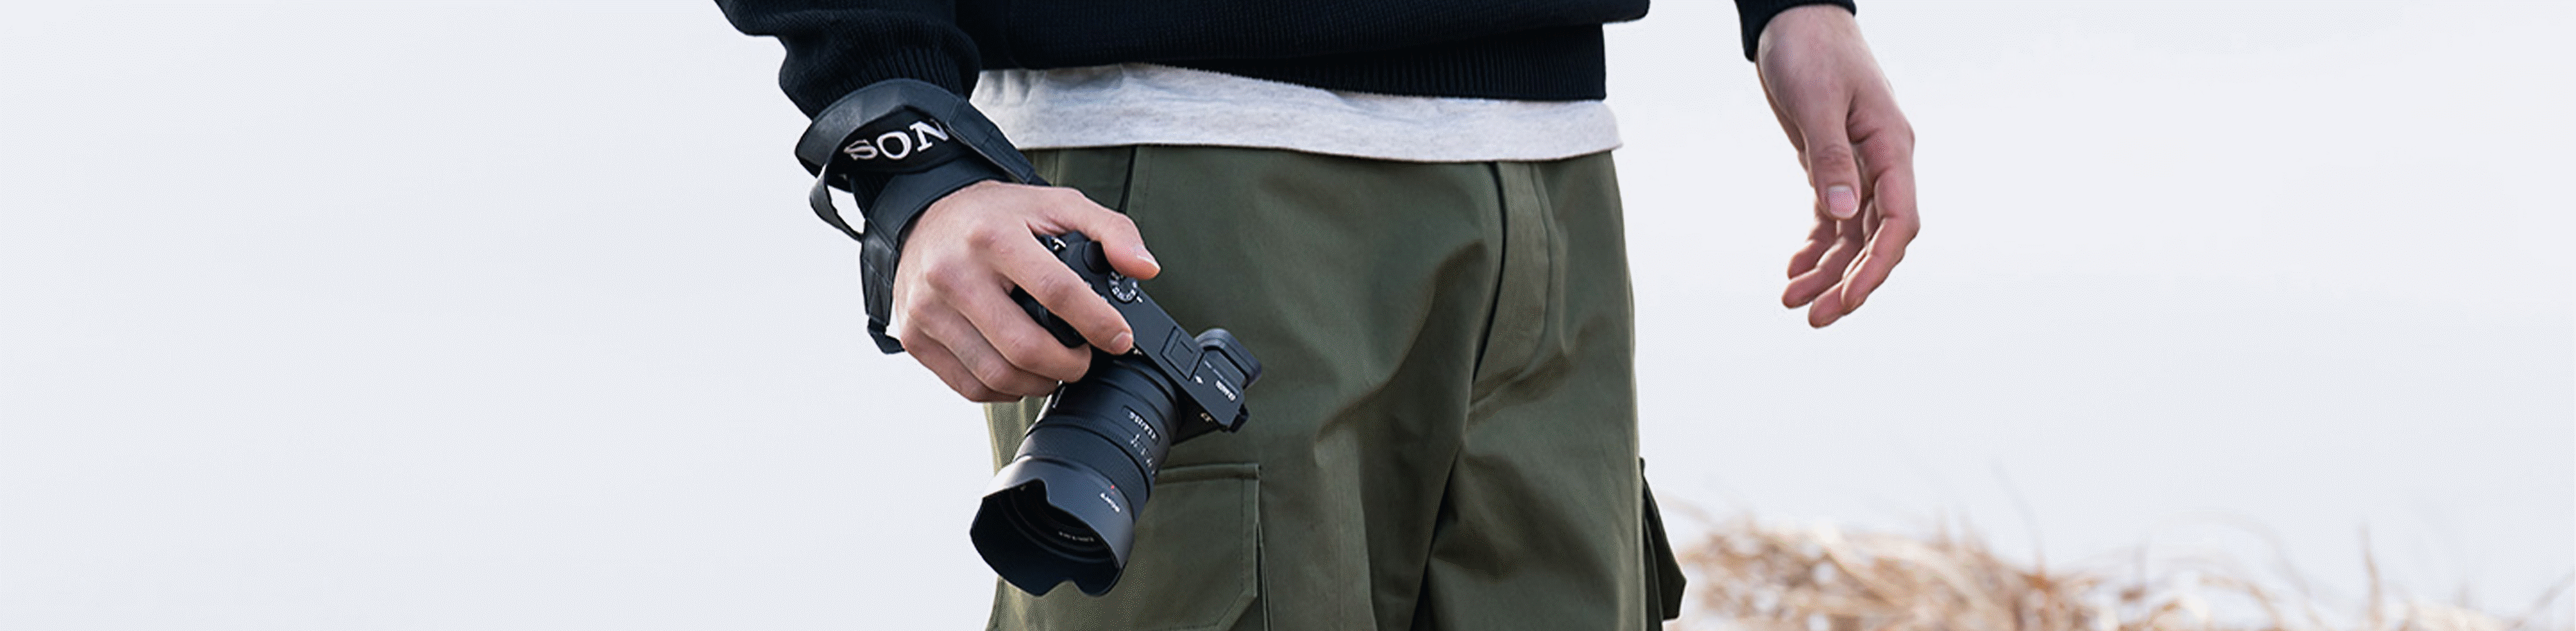 Immagine di un uomo con la fotocamera in mano